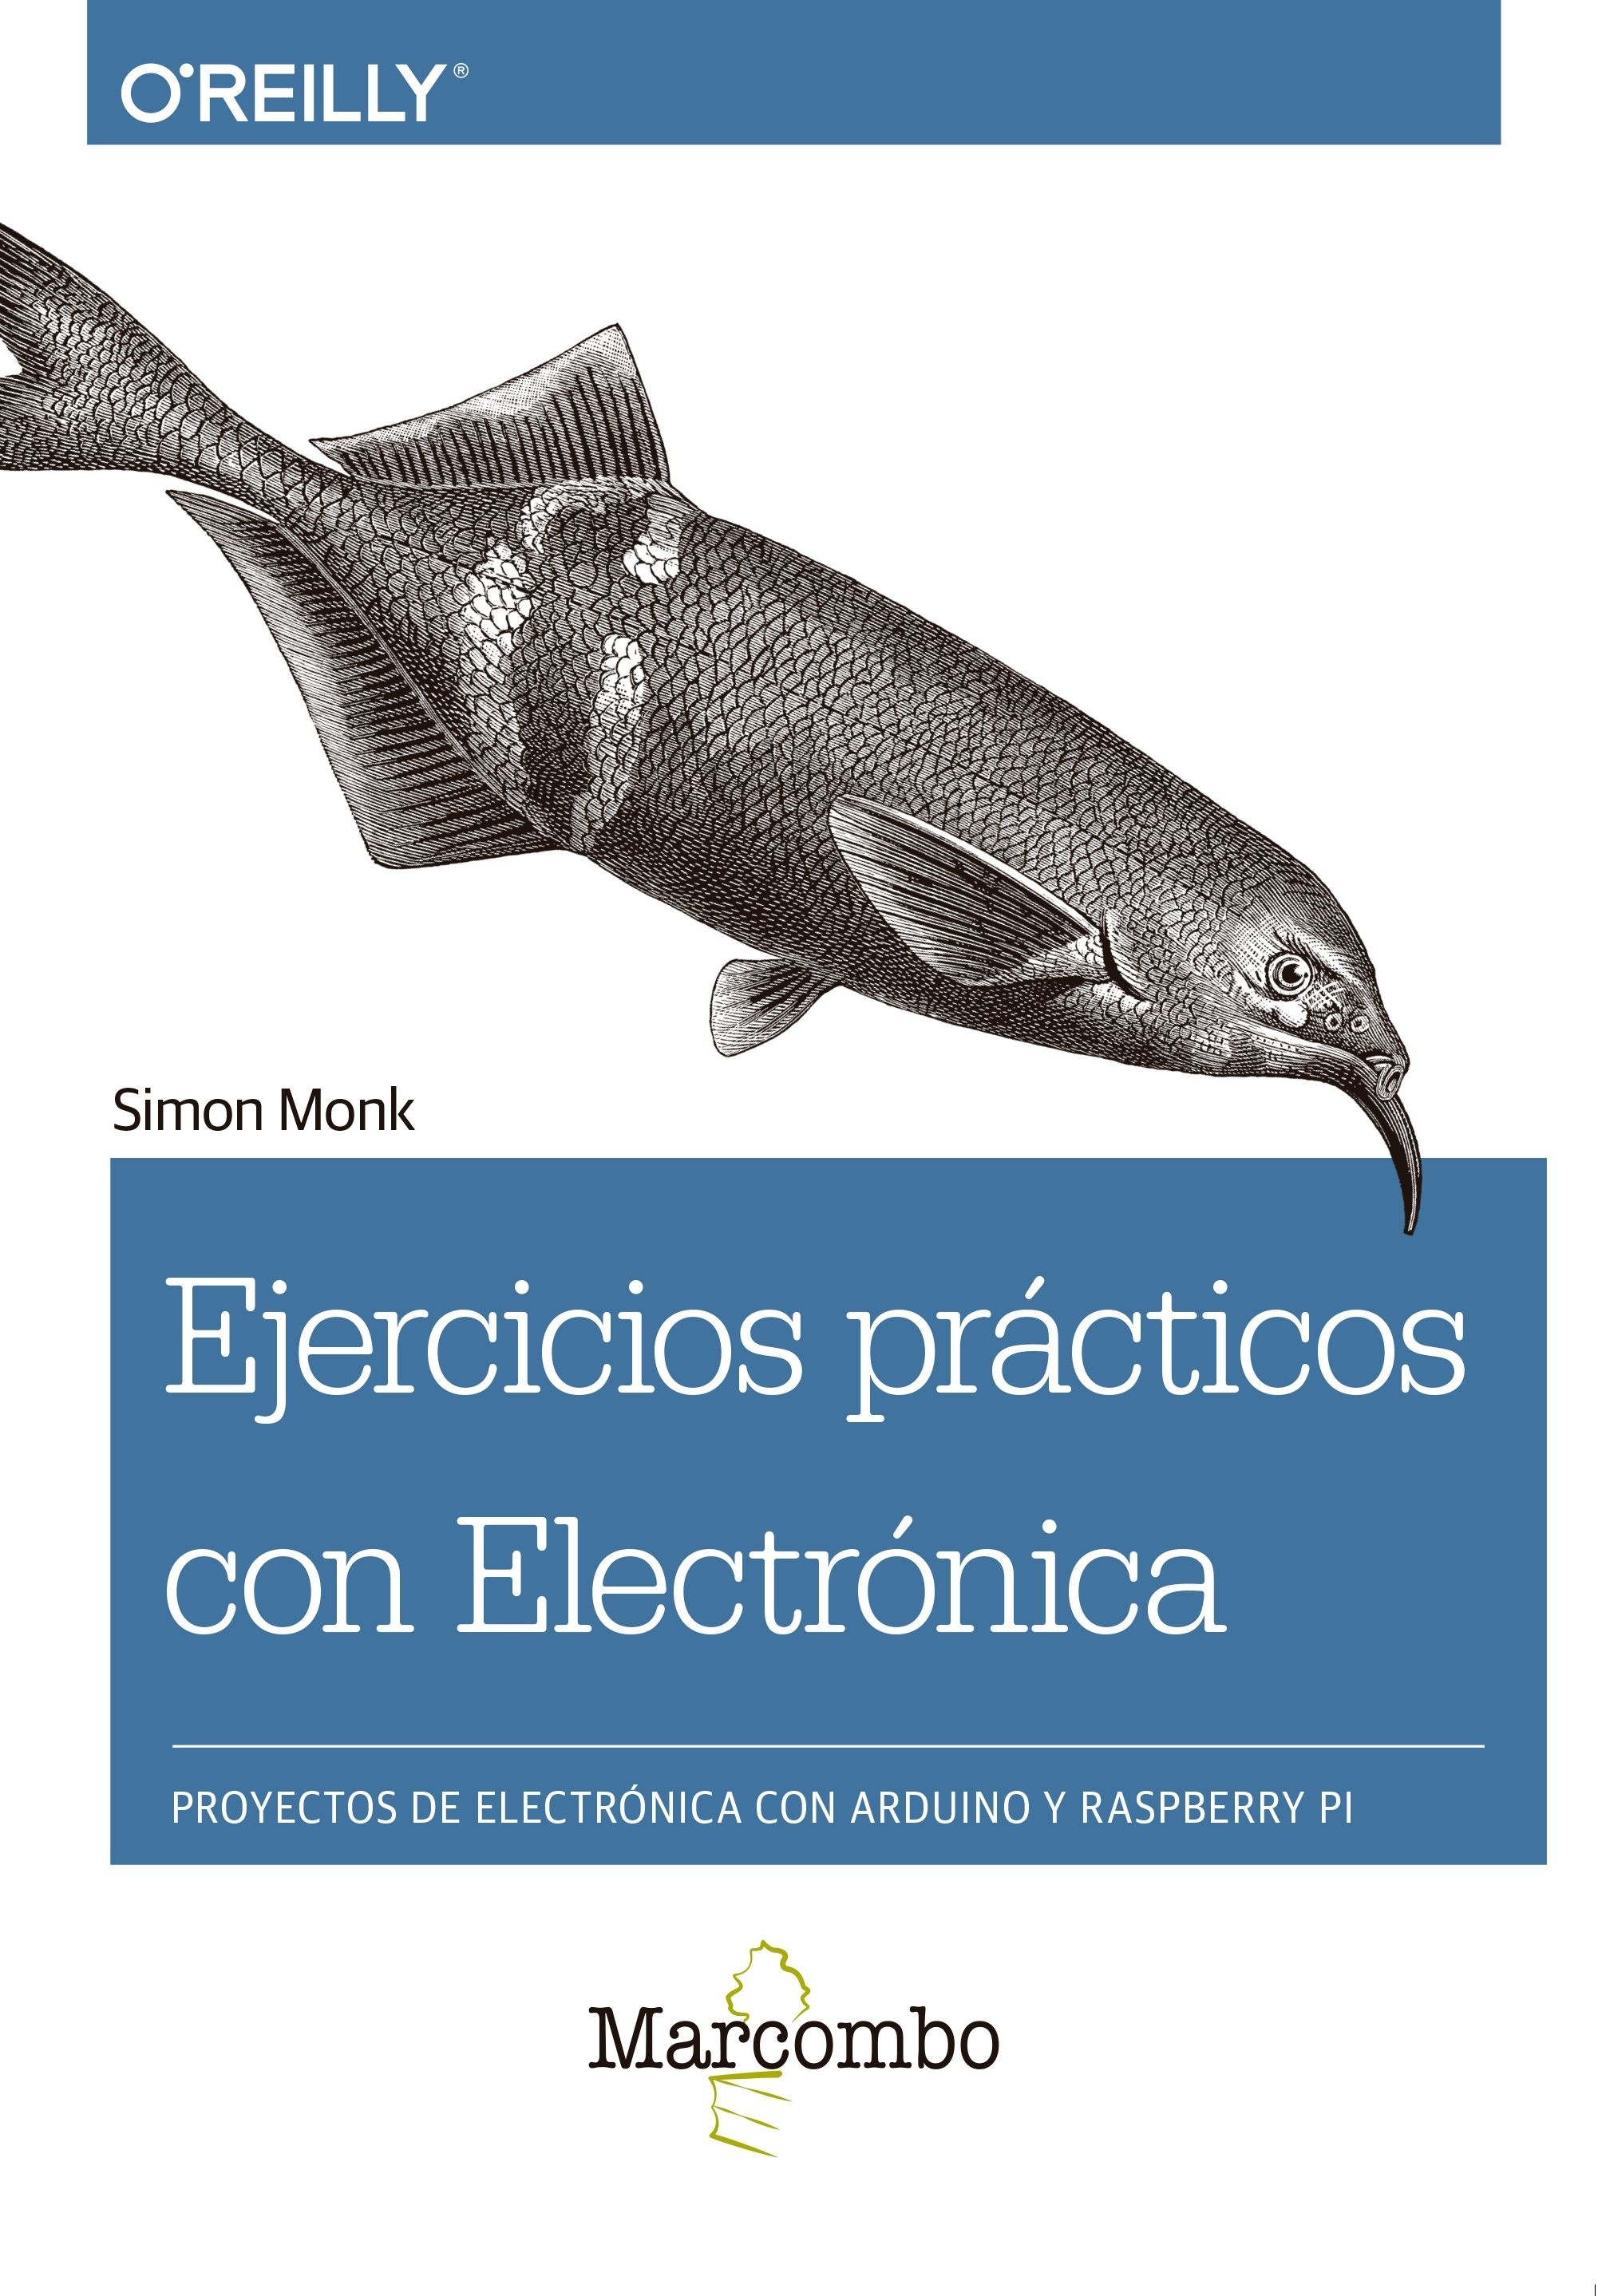 Ejercicios prácticos con Electrónica "Proyectos de electrónica con Arduino y Raspberry Pi"